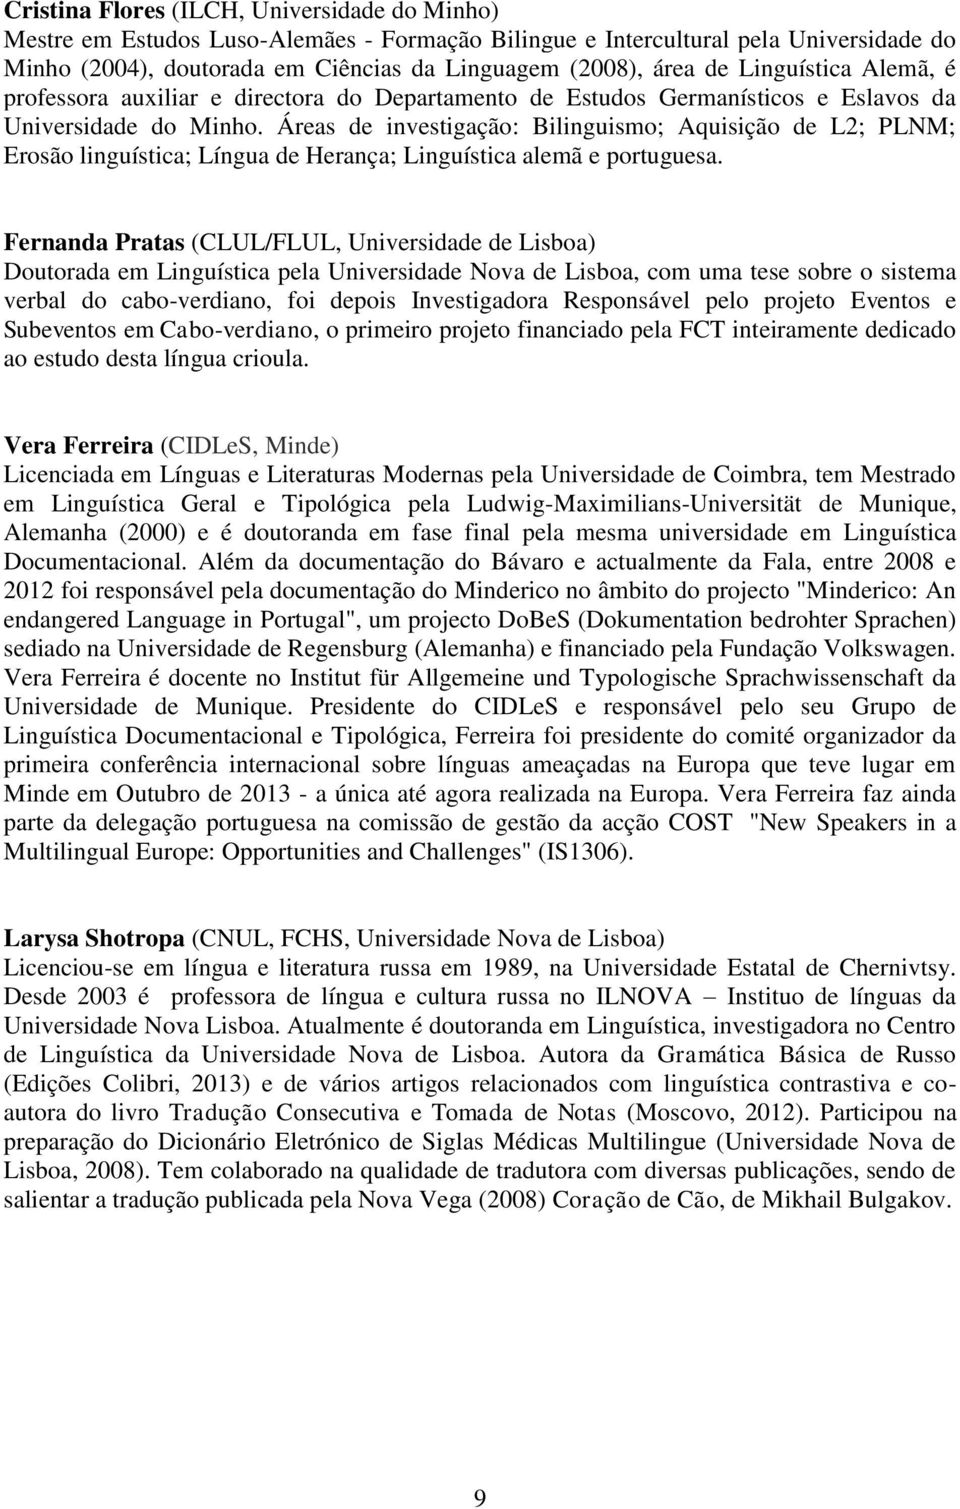 Áreas de investigação: Bilinguismo; Aquisição de L2; PLNM; Erosão linguística; Língua de Herança; Linguística alemã e portuguesa.